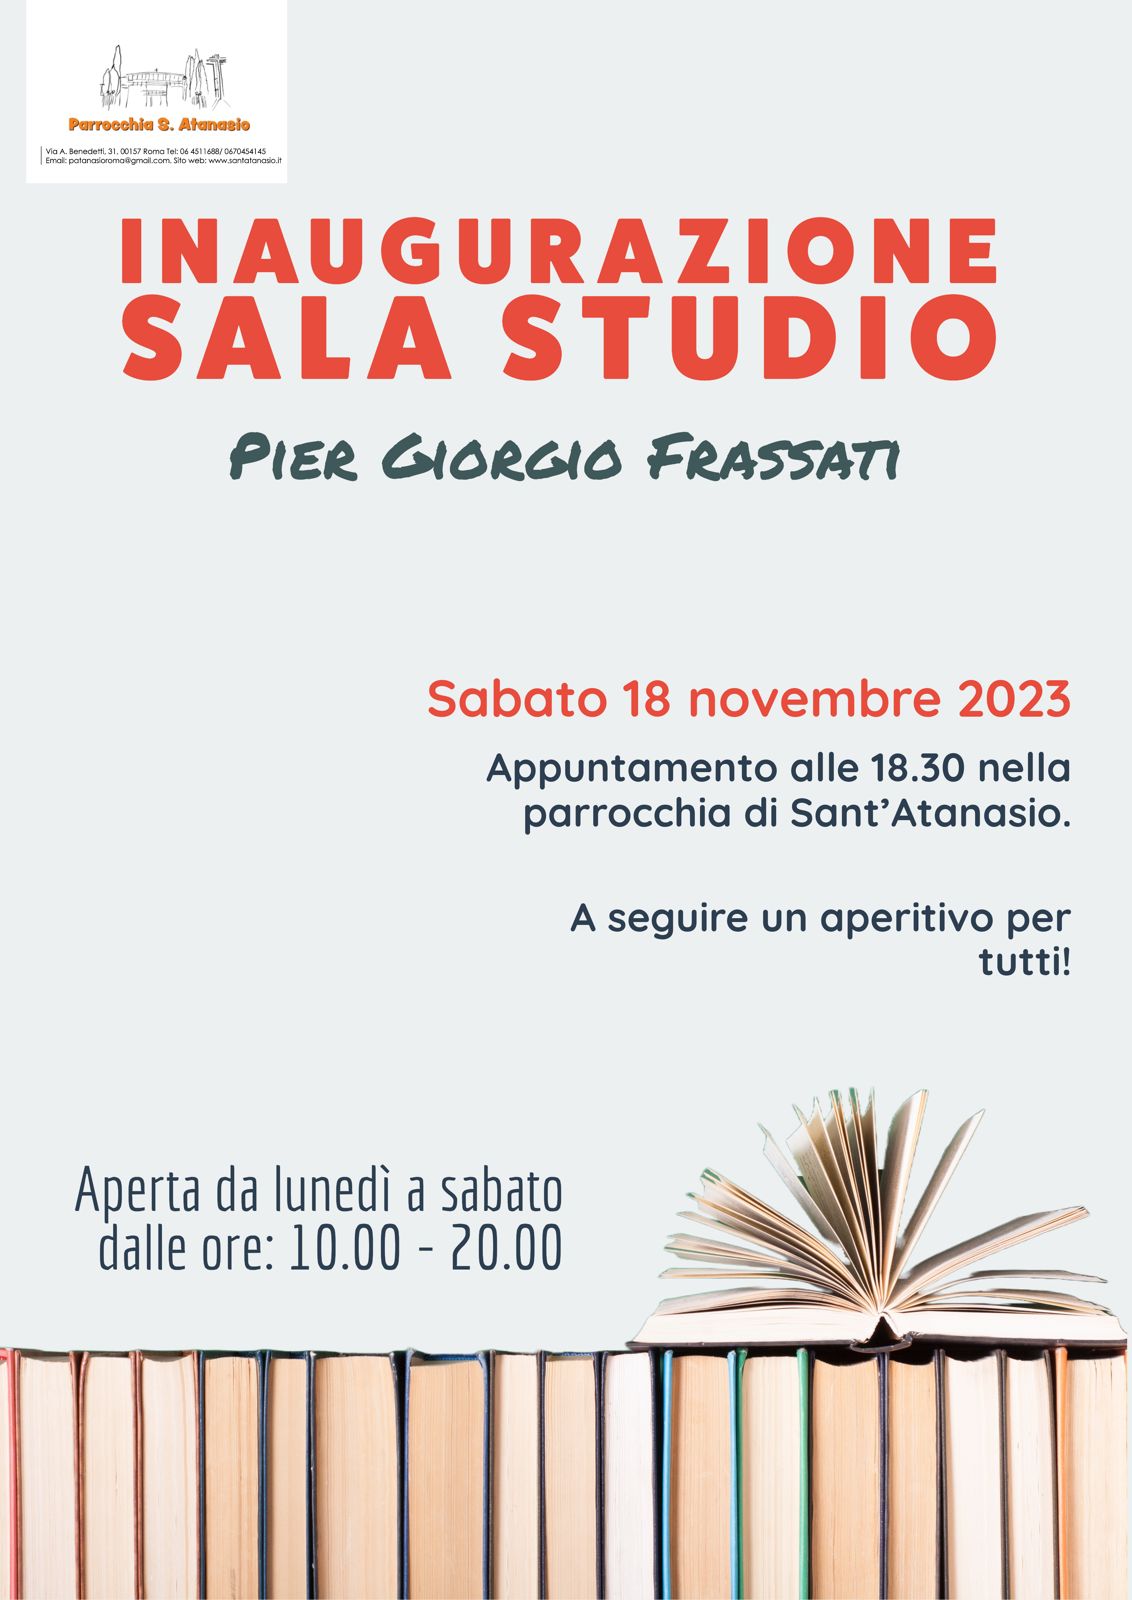 Inaugurazione Sala Studio Pier Giorgio Frassati